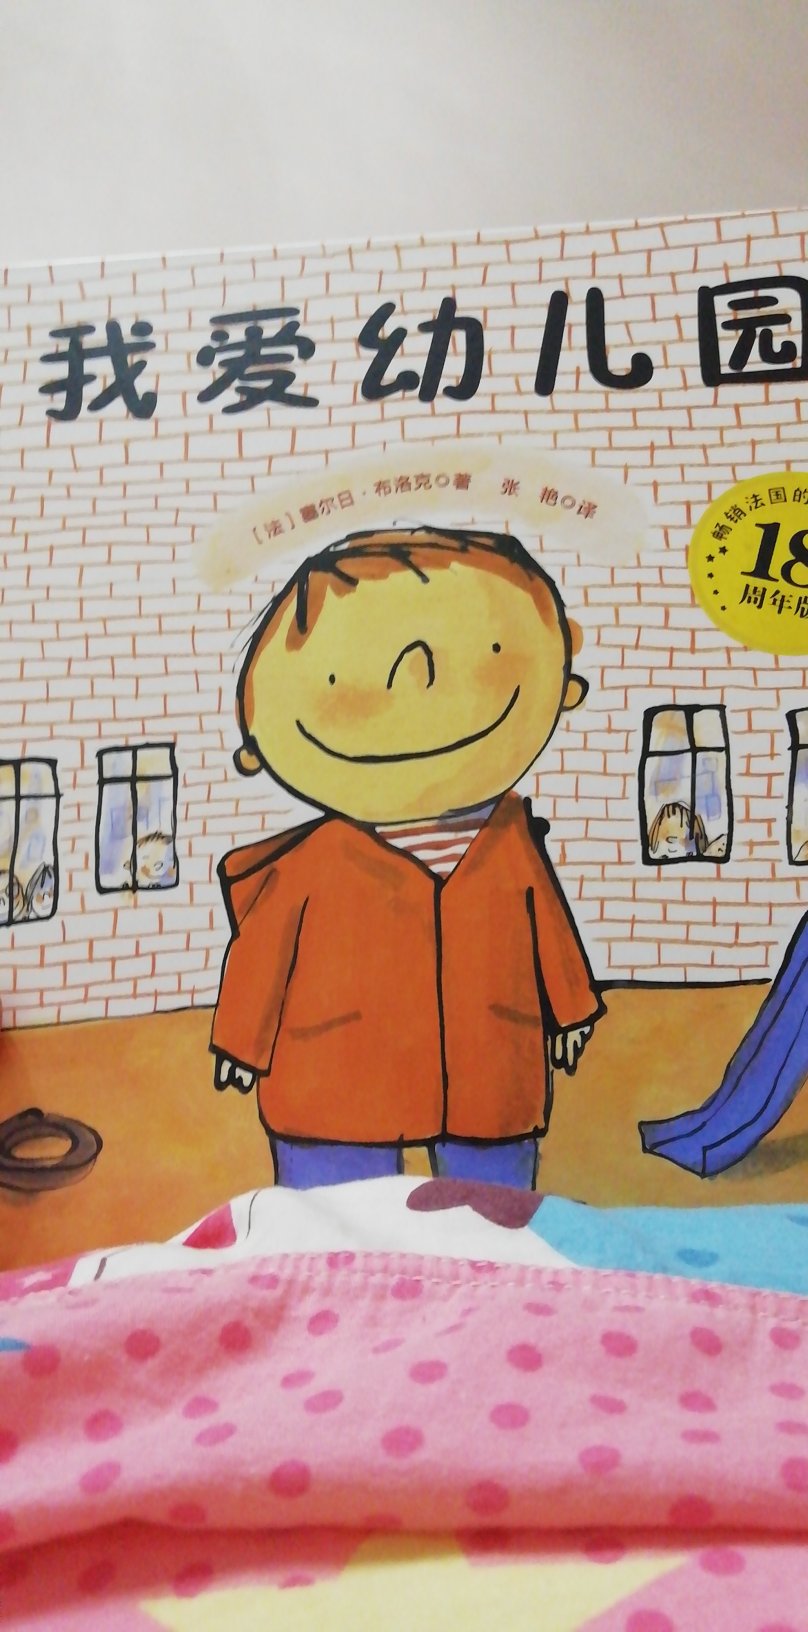 这本书内容不错，孩子很喜欢看，为上幼儿园提前洗洗脑吧哈哈哈哈